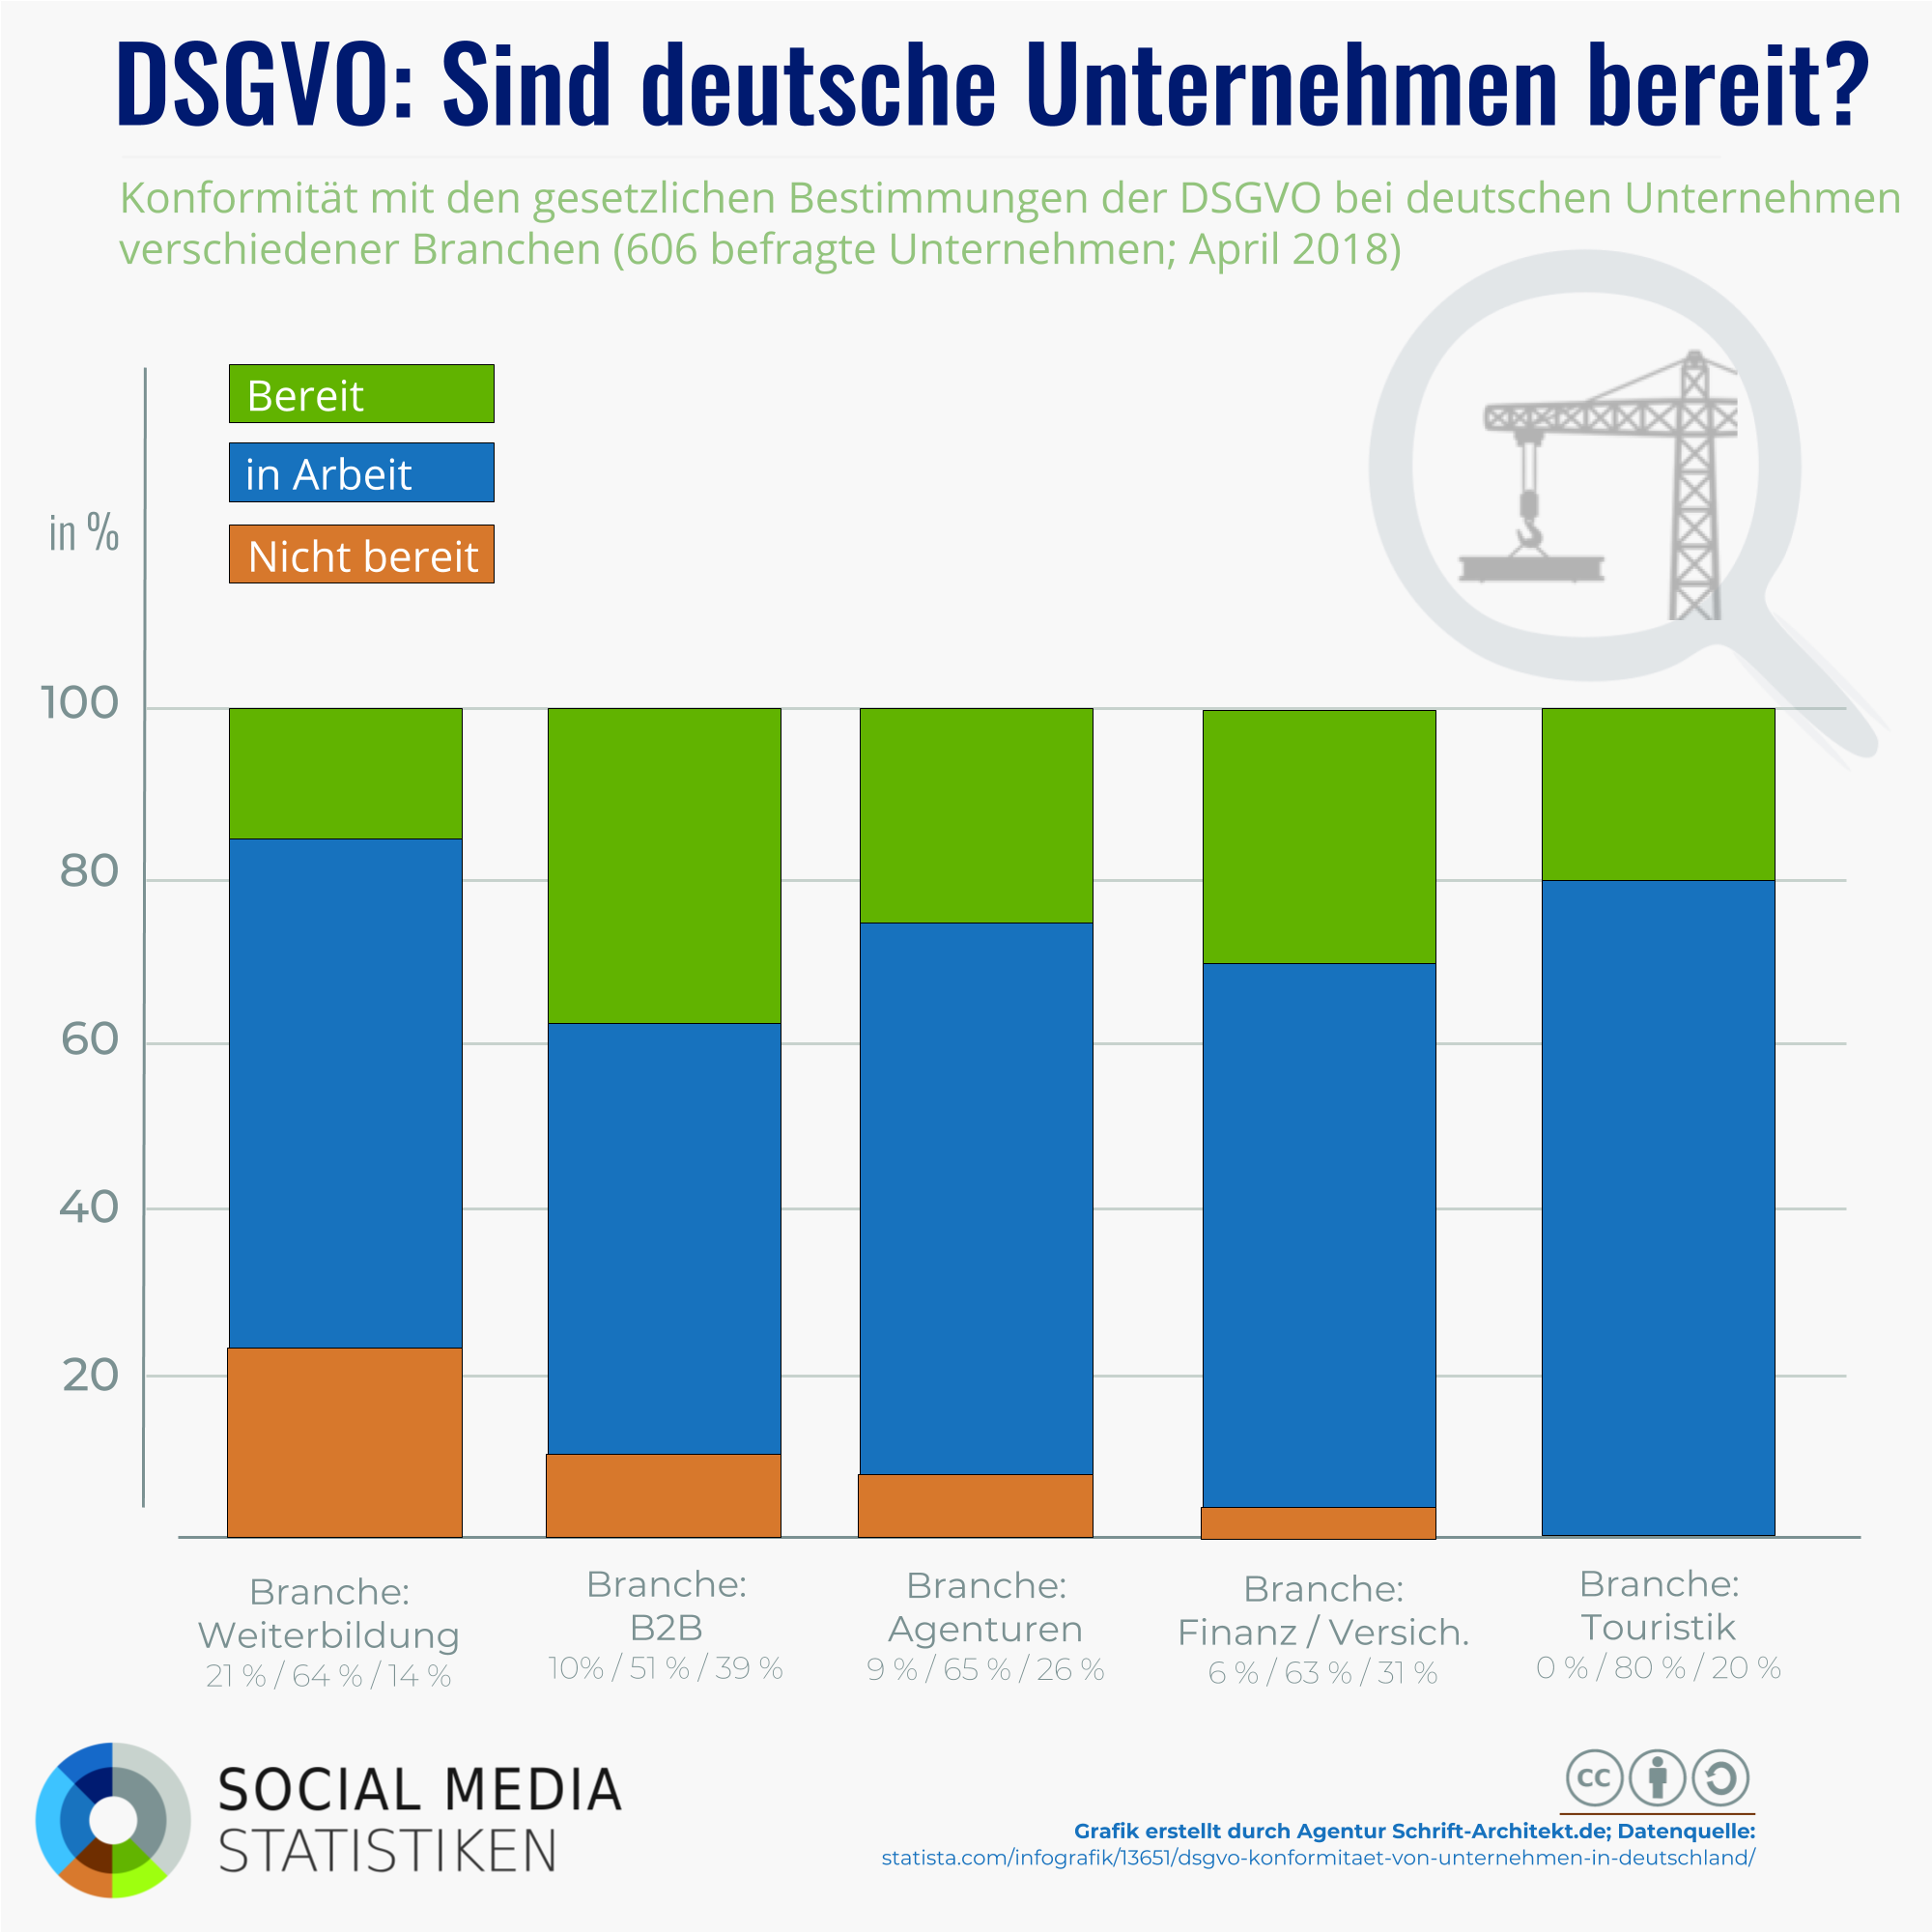 DSGVO: Sind deutsche Unternehmen bereit? Konformität mit den gesetzlichen bestimmungen bei deutschen Unternehmen.